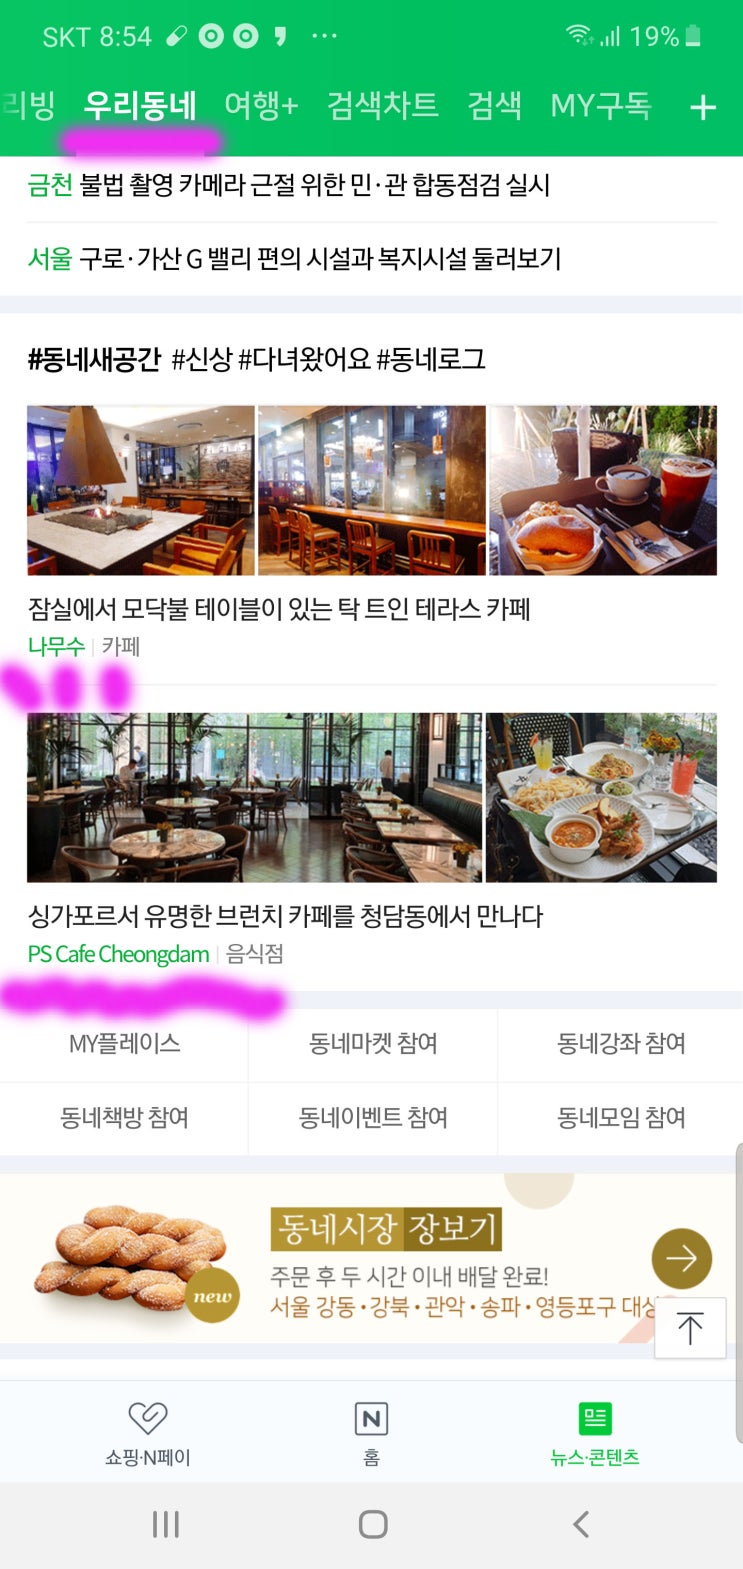 네이버 메인 ' 우리동네 새공간 '에 제 글이 소개되었어요.^^